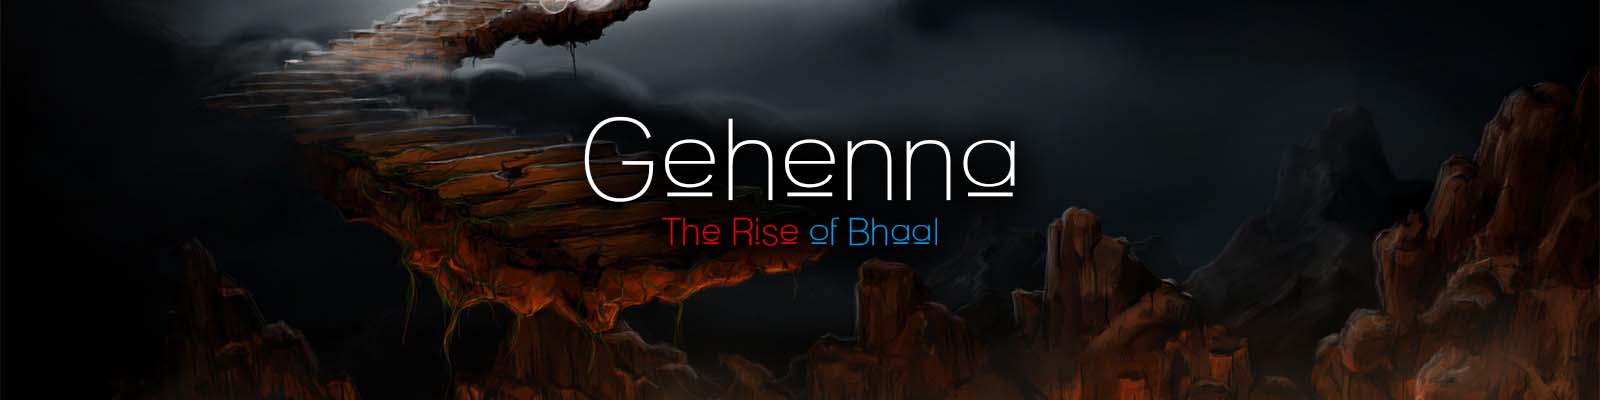 Gehenna: Bhaalo kilimas